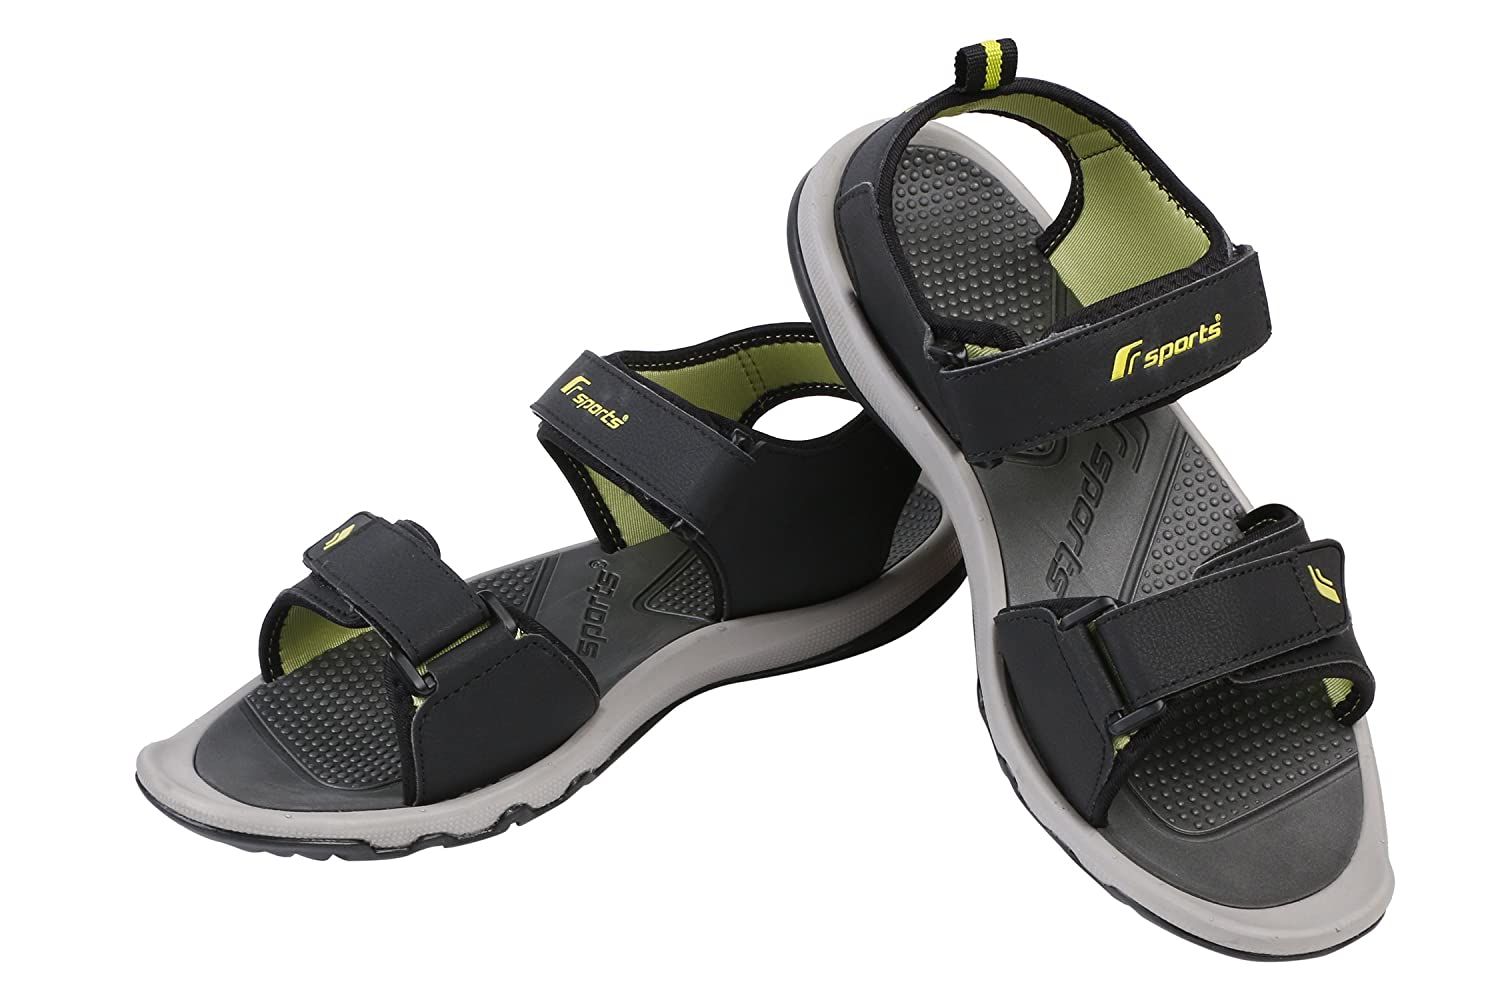 Buy Sandals For Men: Joy-3K-480Blk-Rst599 | Campus Shoes